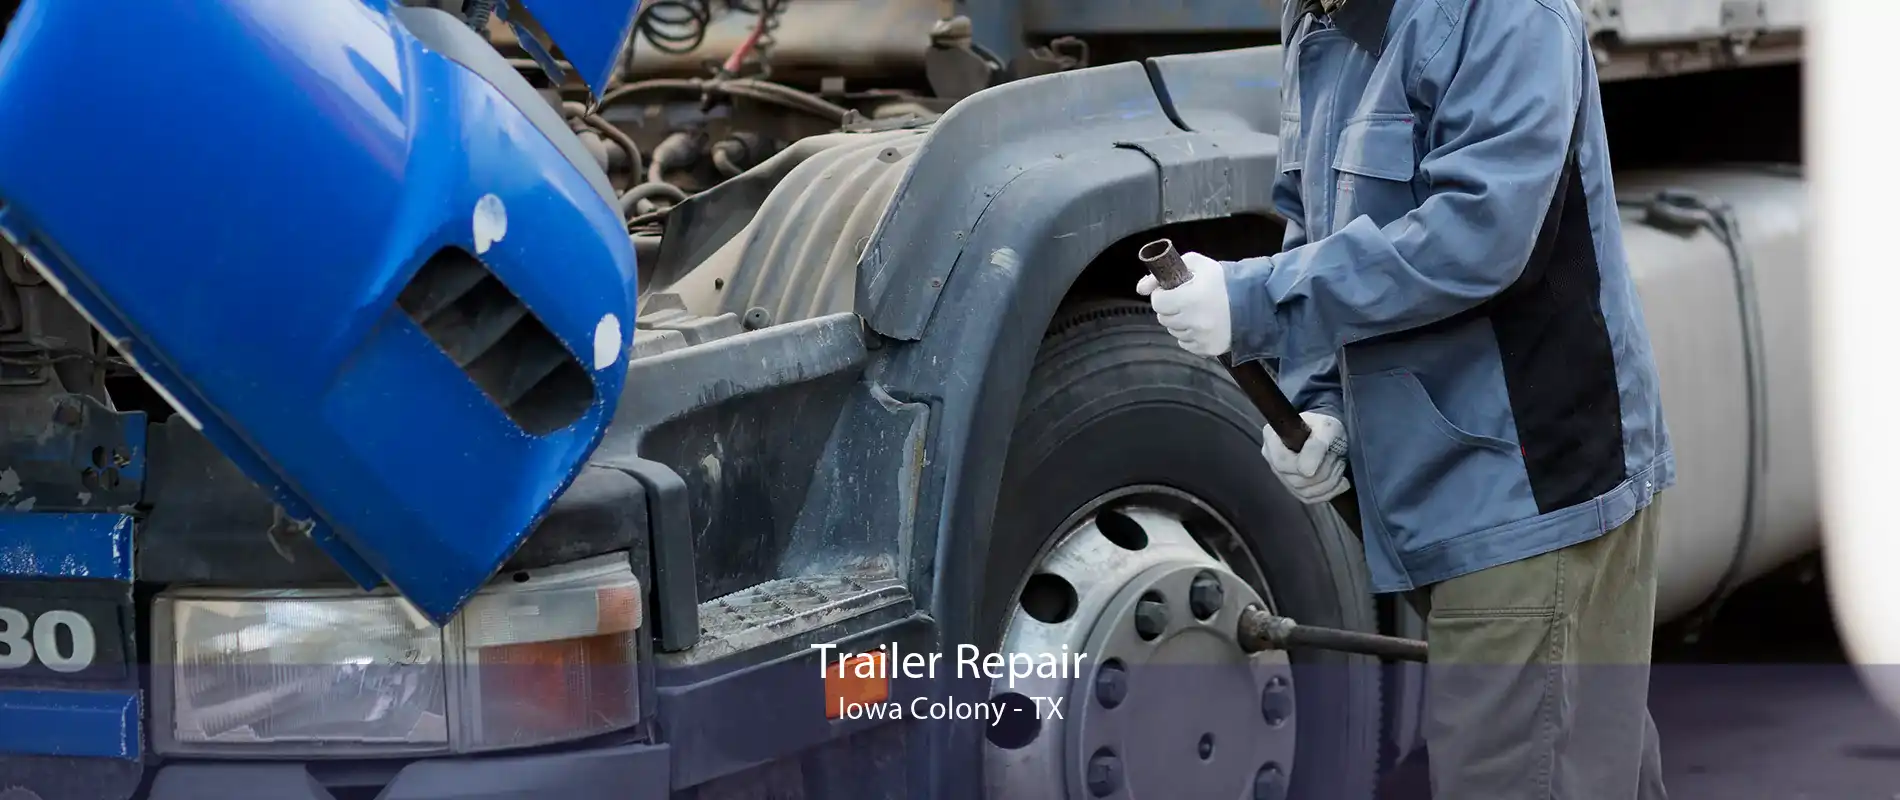 Trailer Repair Iowa Colony - TX